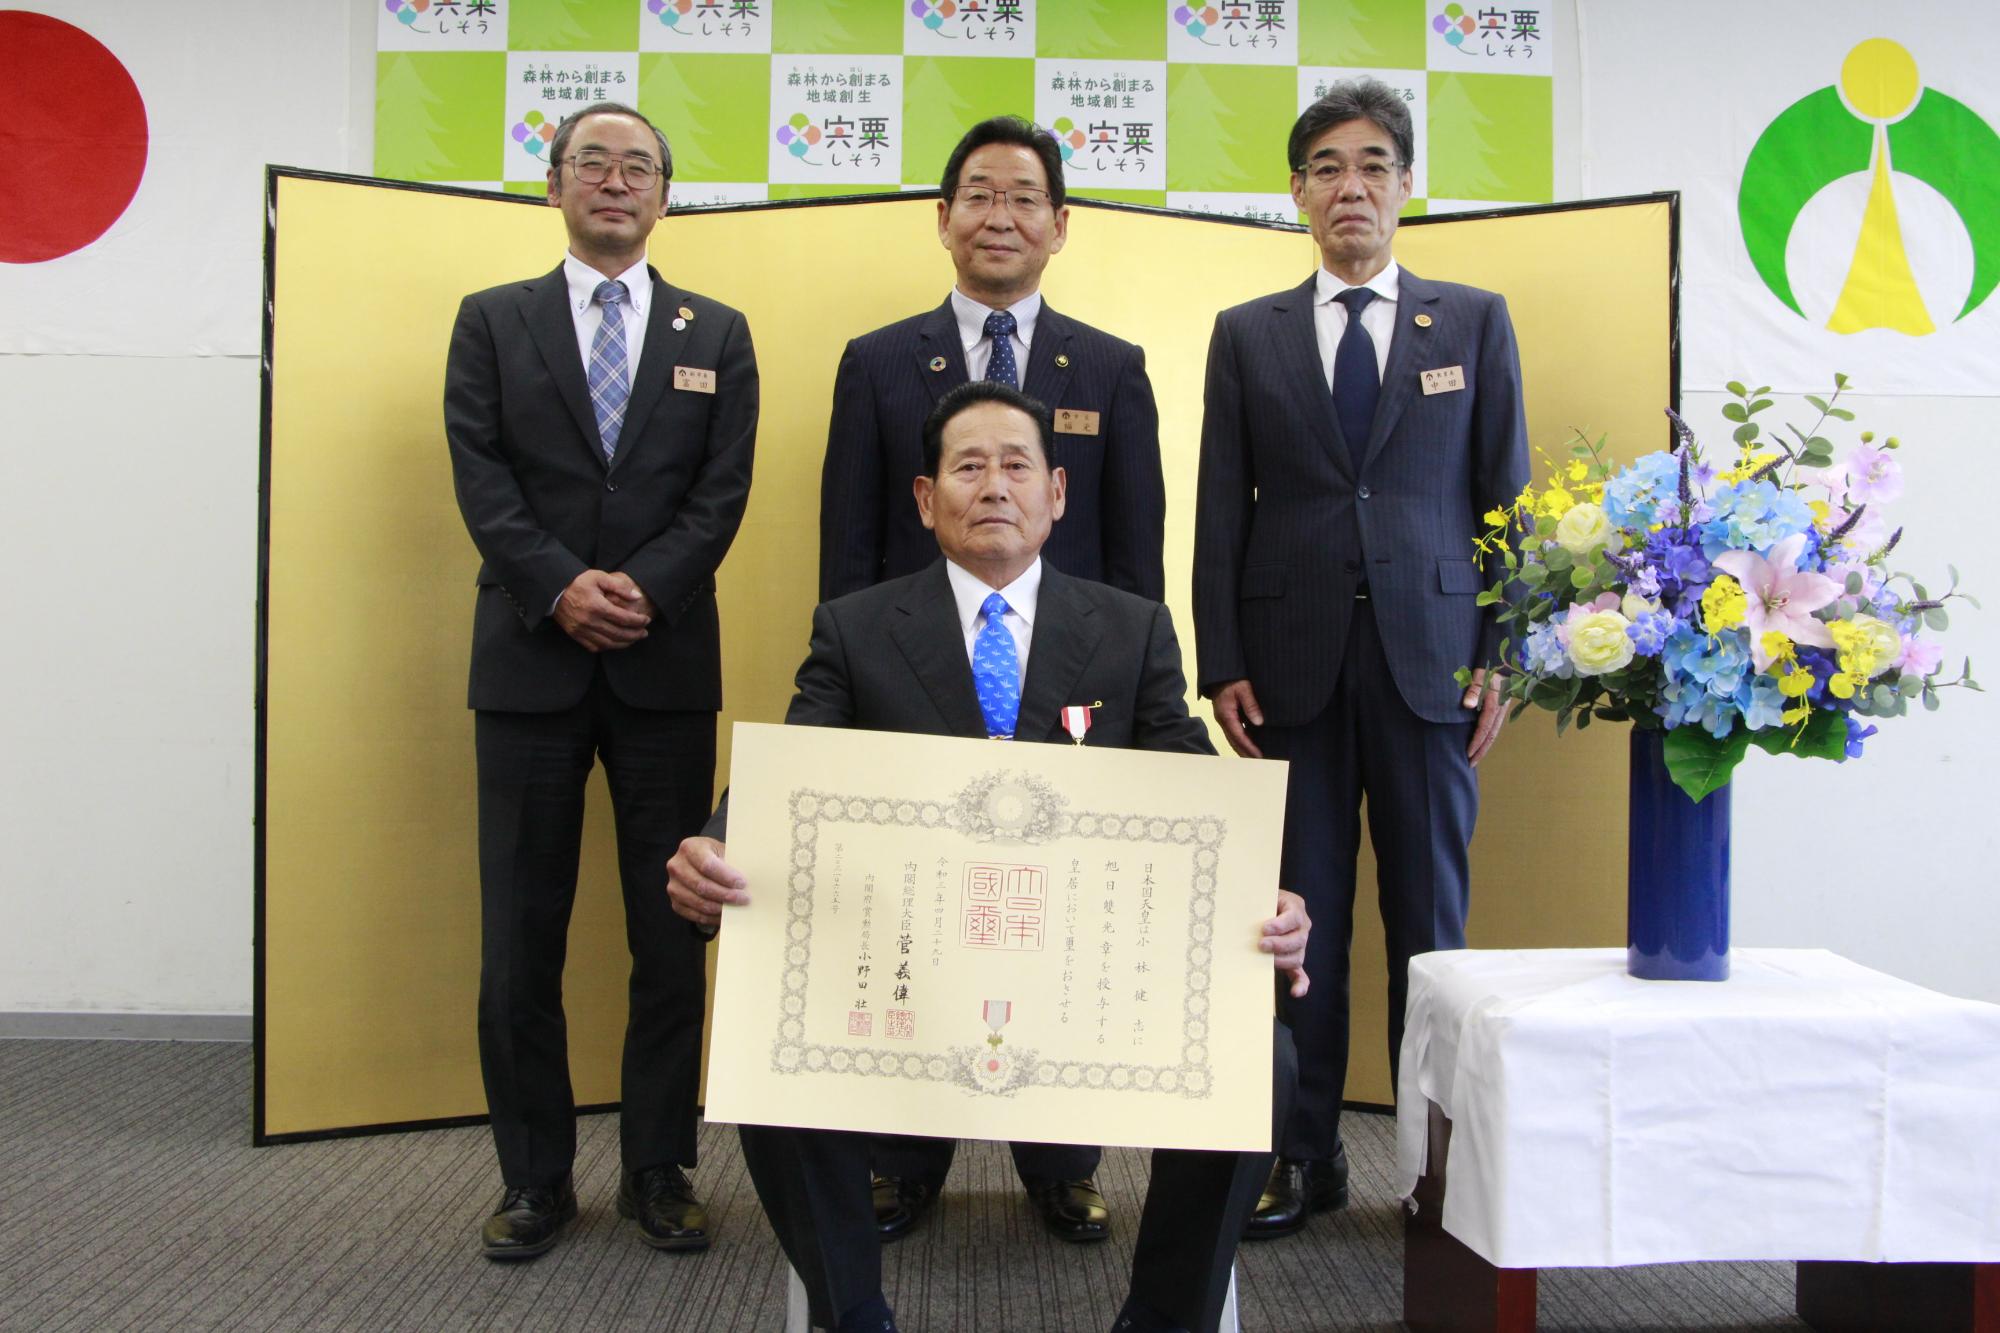 前列は賞状を手にした小林健志さん、後列は左から富田副市長、福元市長、中田教育長の写真